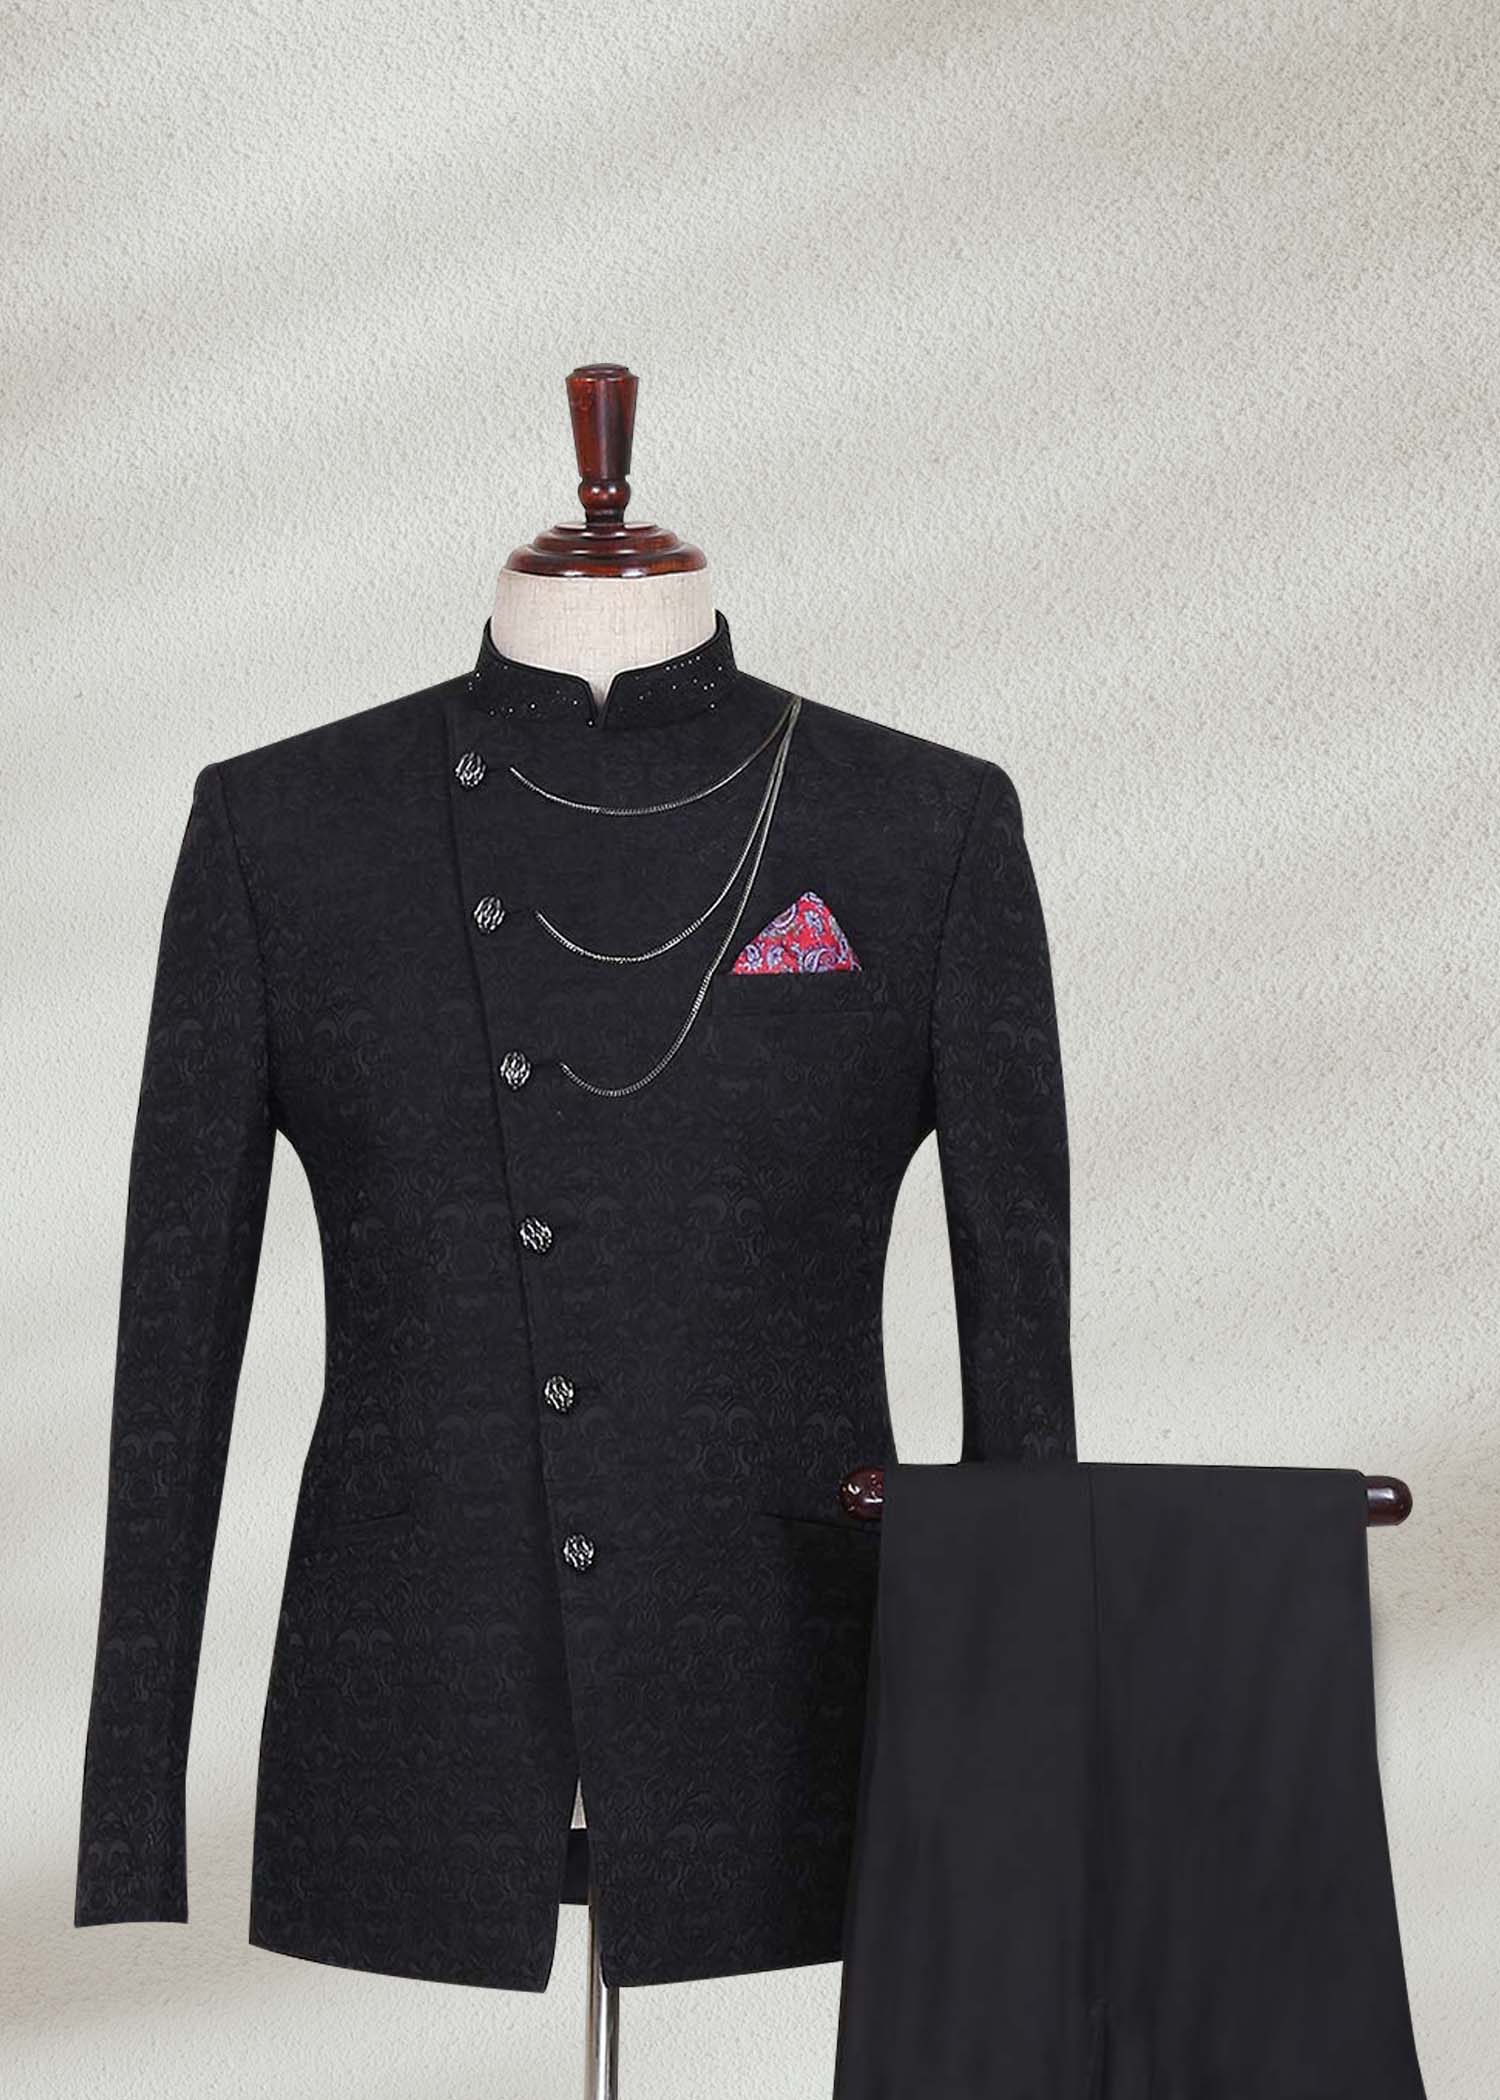 Buy Elegant Black Angled Cut Prince Suit - Shameel Khan